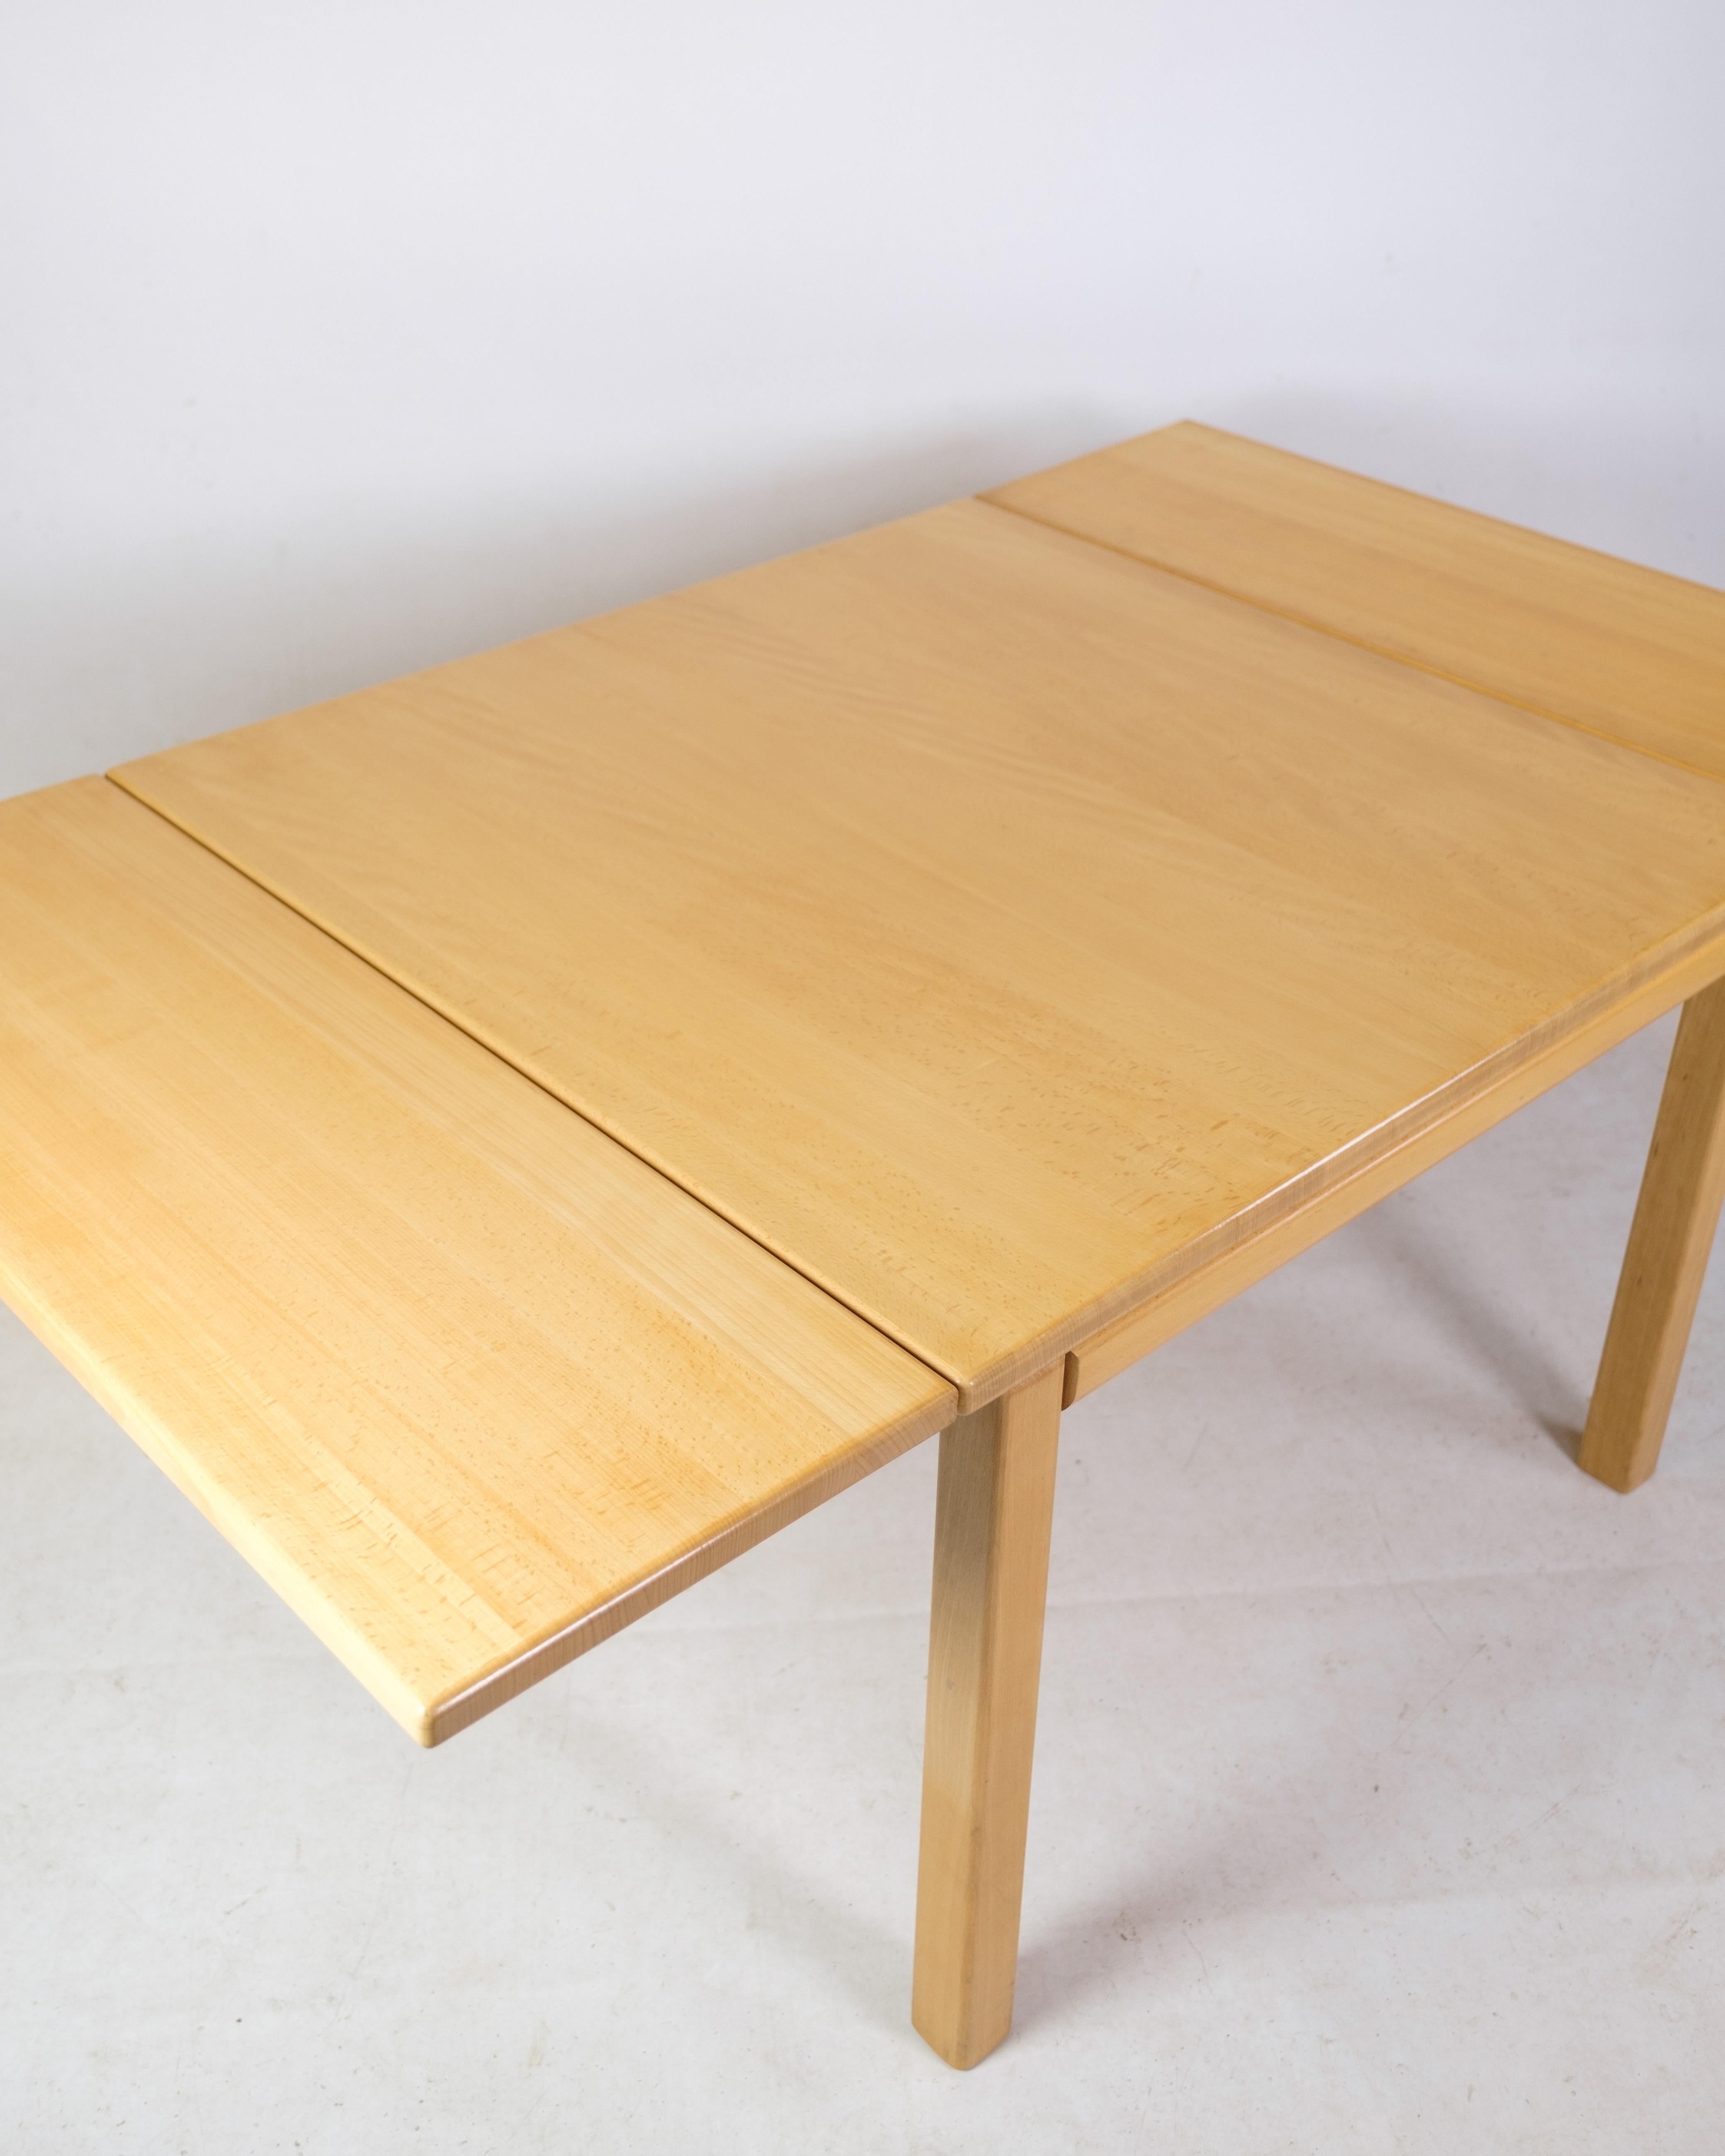 Table basse en chêne huilé avec 2 abattants par Haslev Møbelsnedkeri avec étiquette d'origine.
Mesures en cm : H:55 L:85/145 P:85